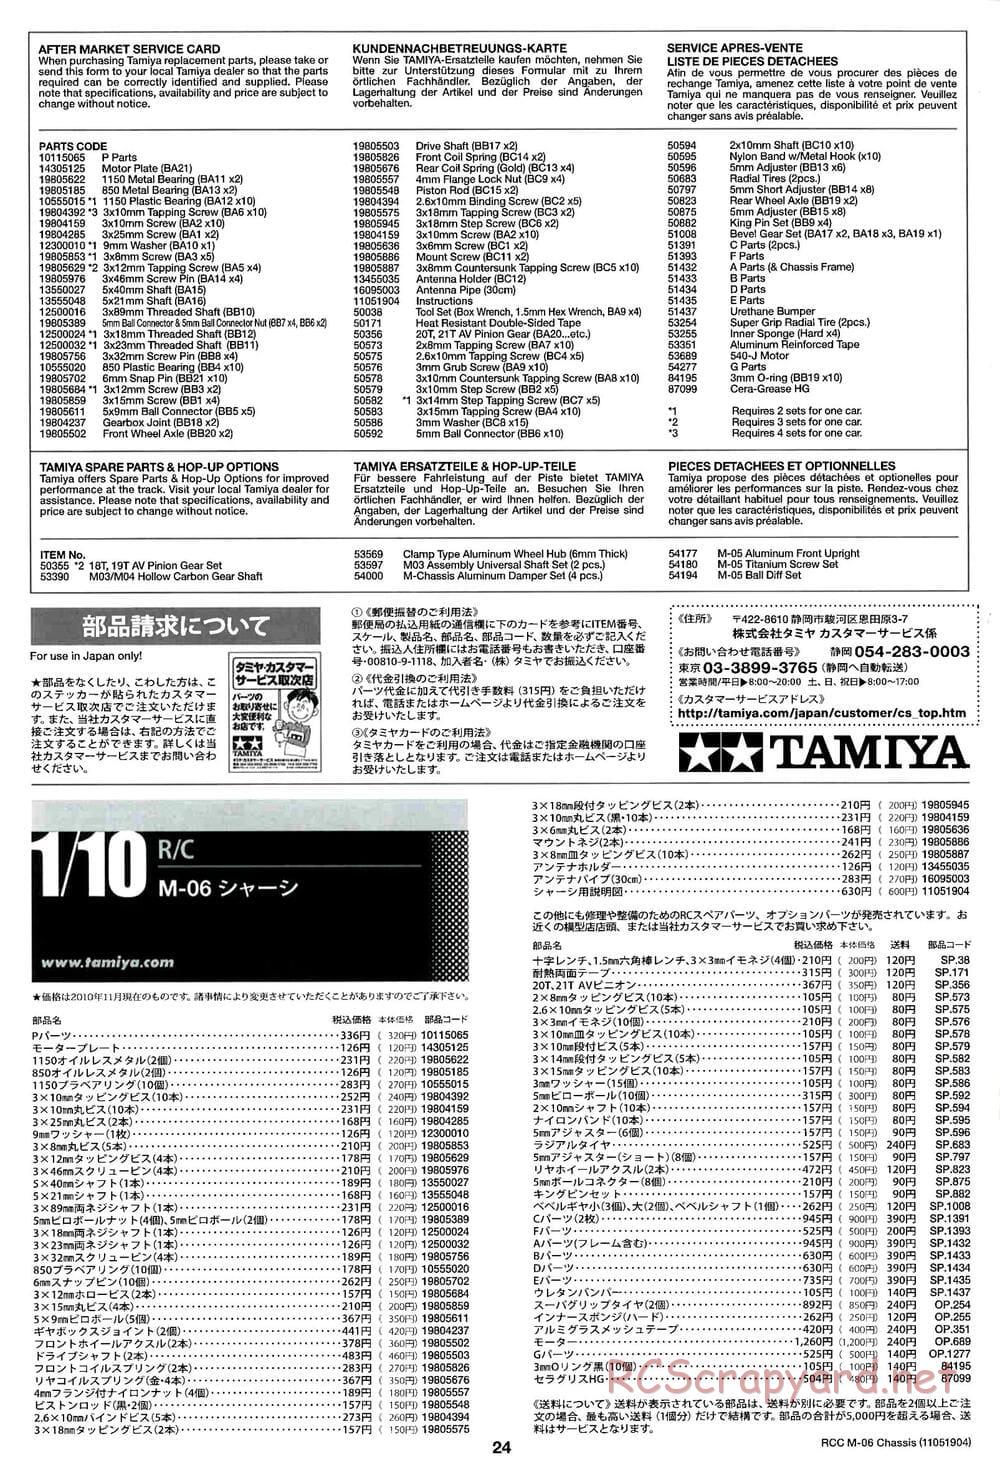 Tamiya - M-06 Chassis - Manual - Page 24